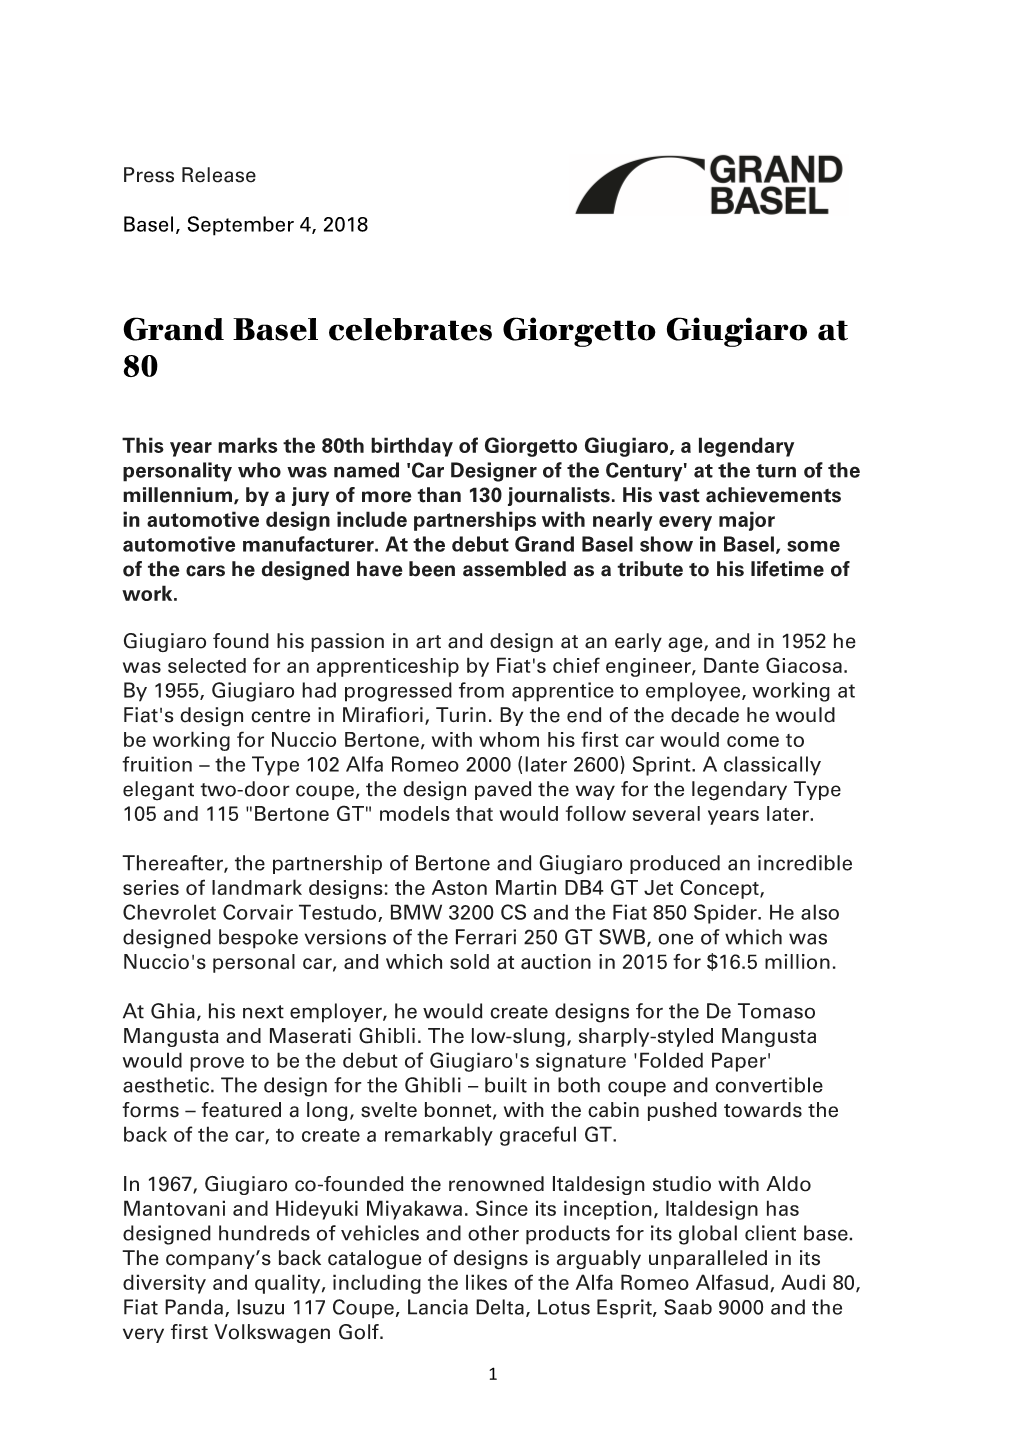 Grand Basel Celebrates Giorgetto Giugiaro at 80